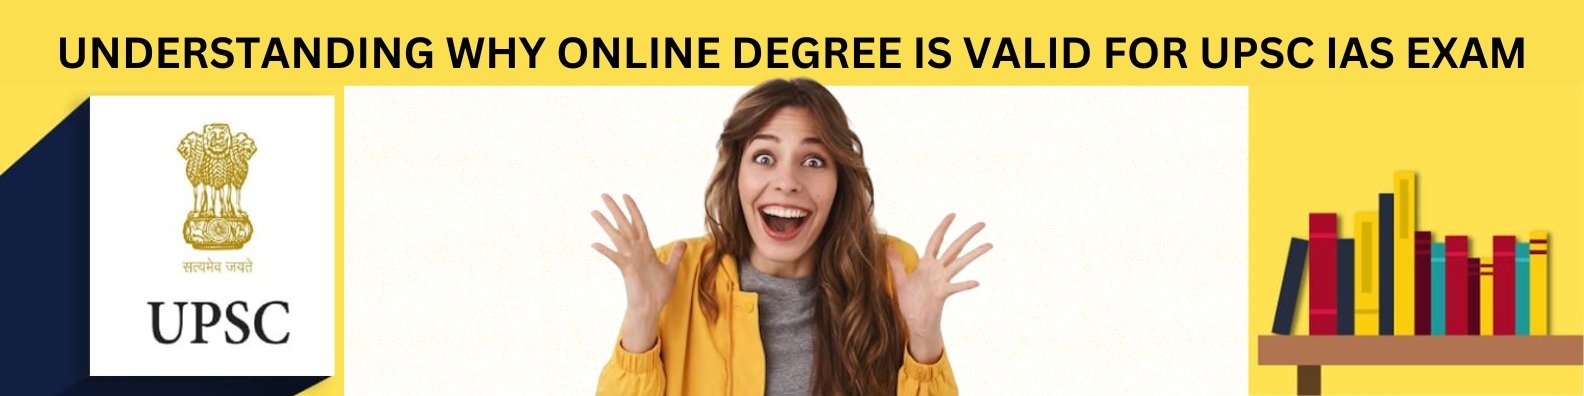 Online MBA Degree for UPSC Exam